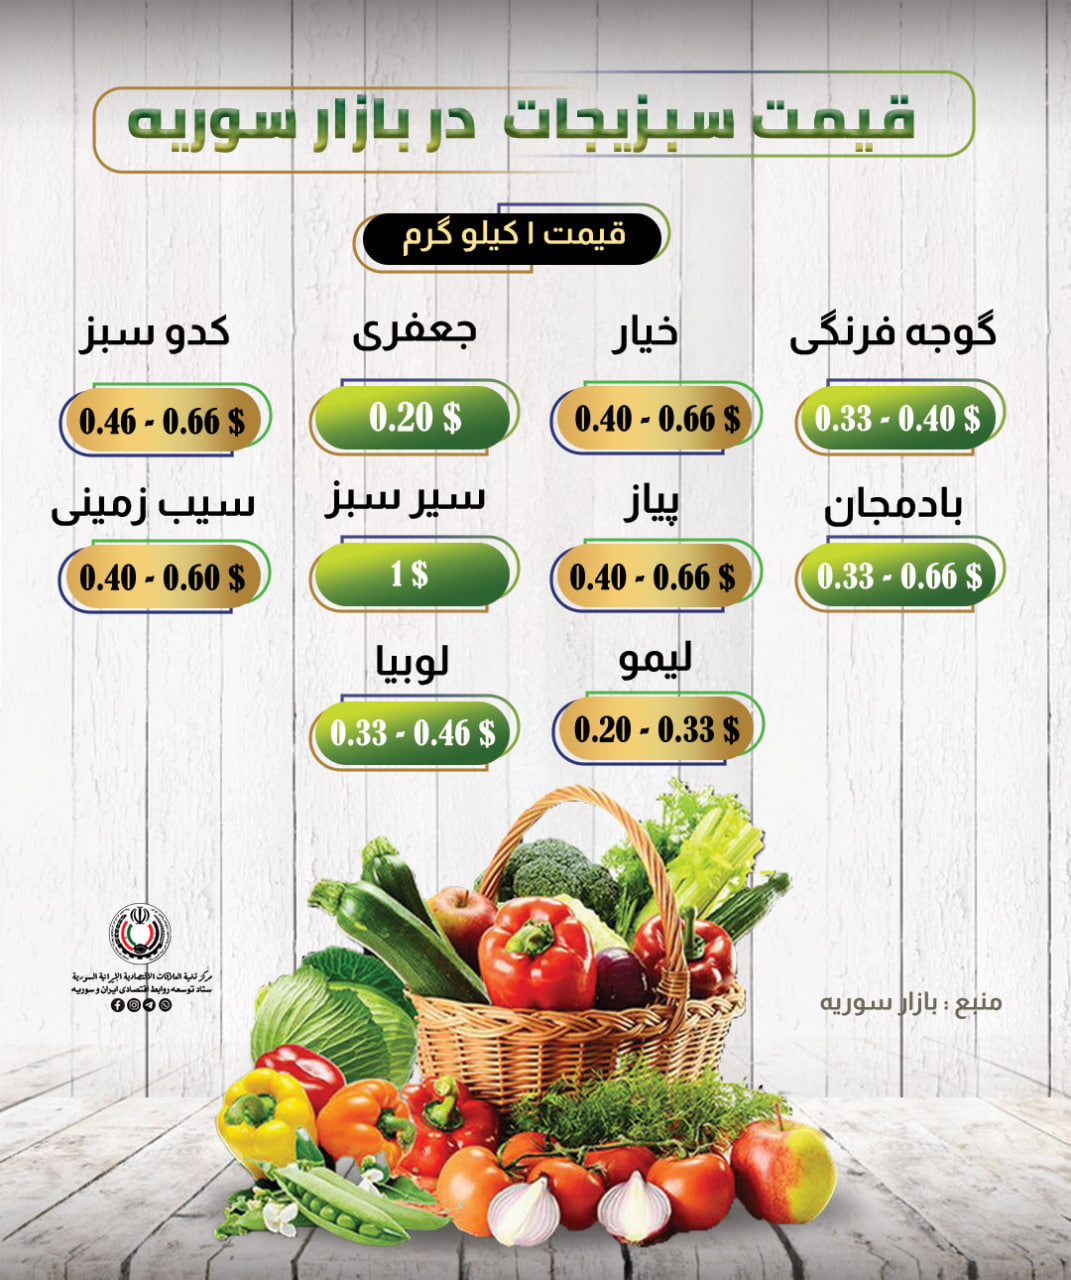 قیمت سبزیجات در بازار سوریه .